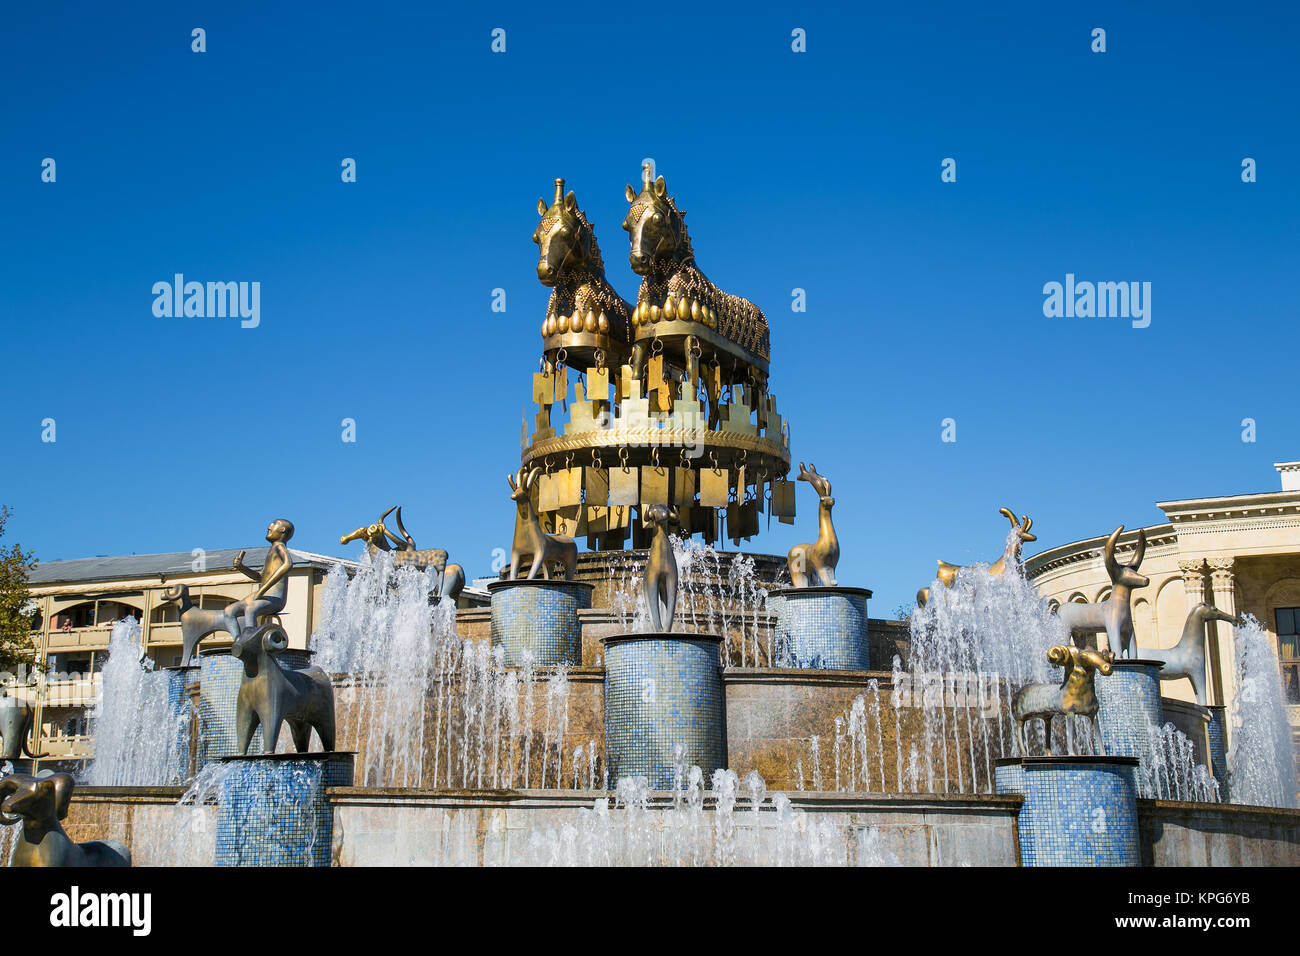 Kolkhida Fountain on the central square of Kutaisi, Georgia, Europe. Stock Photo